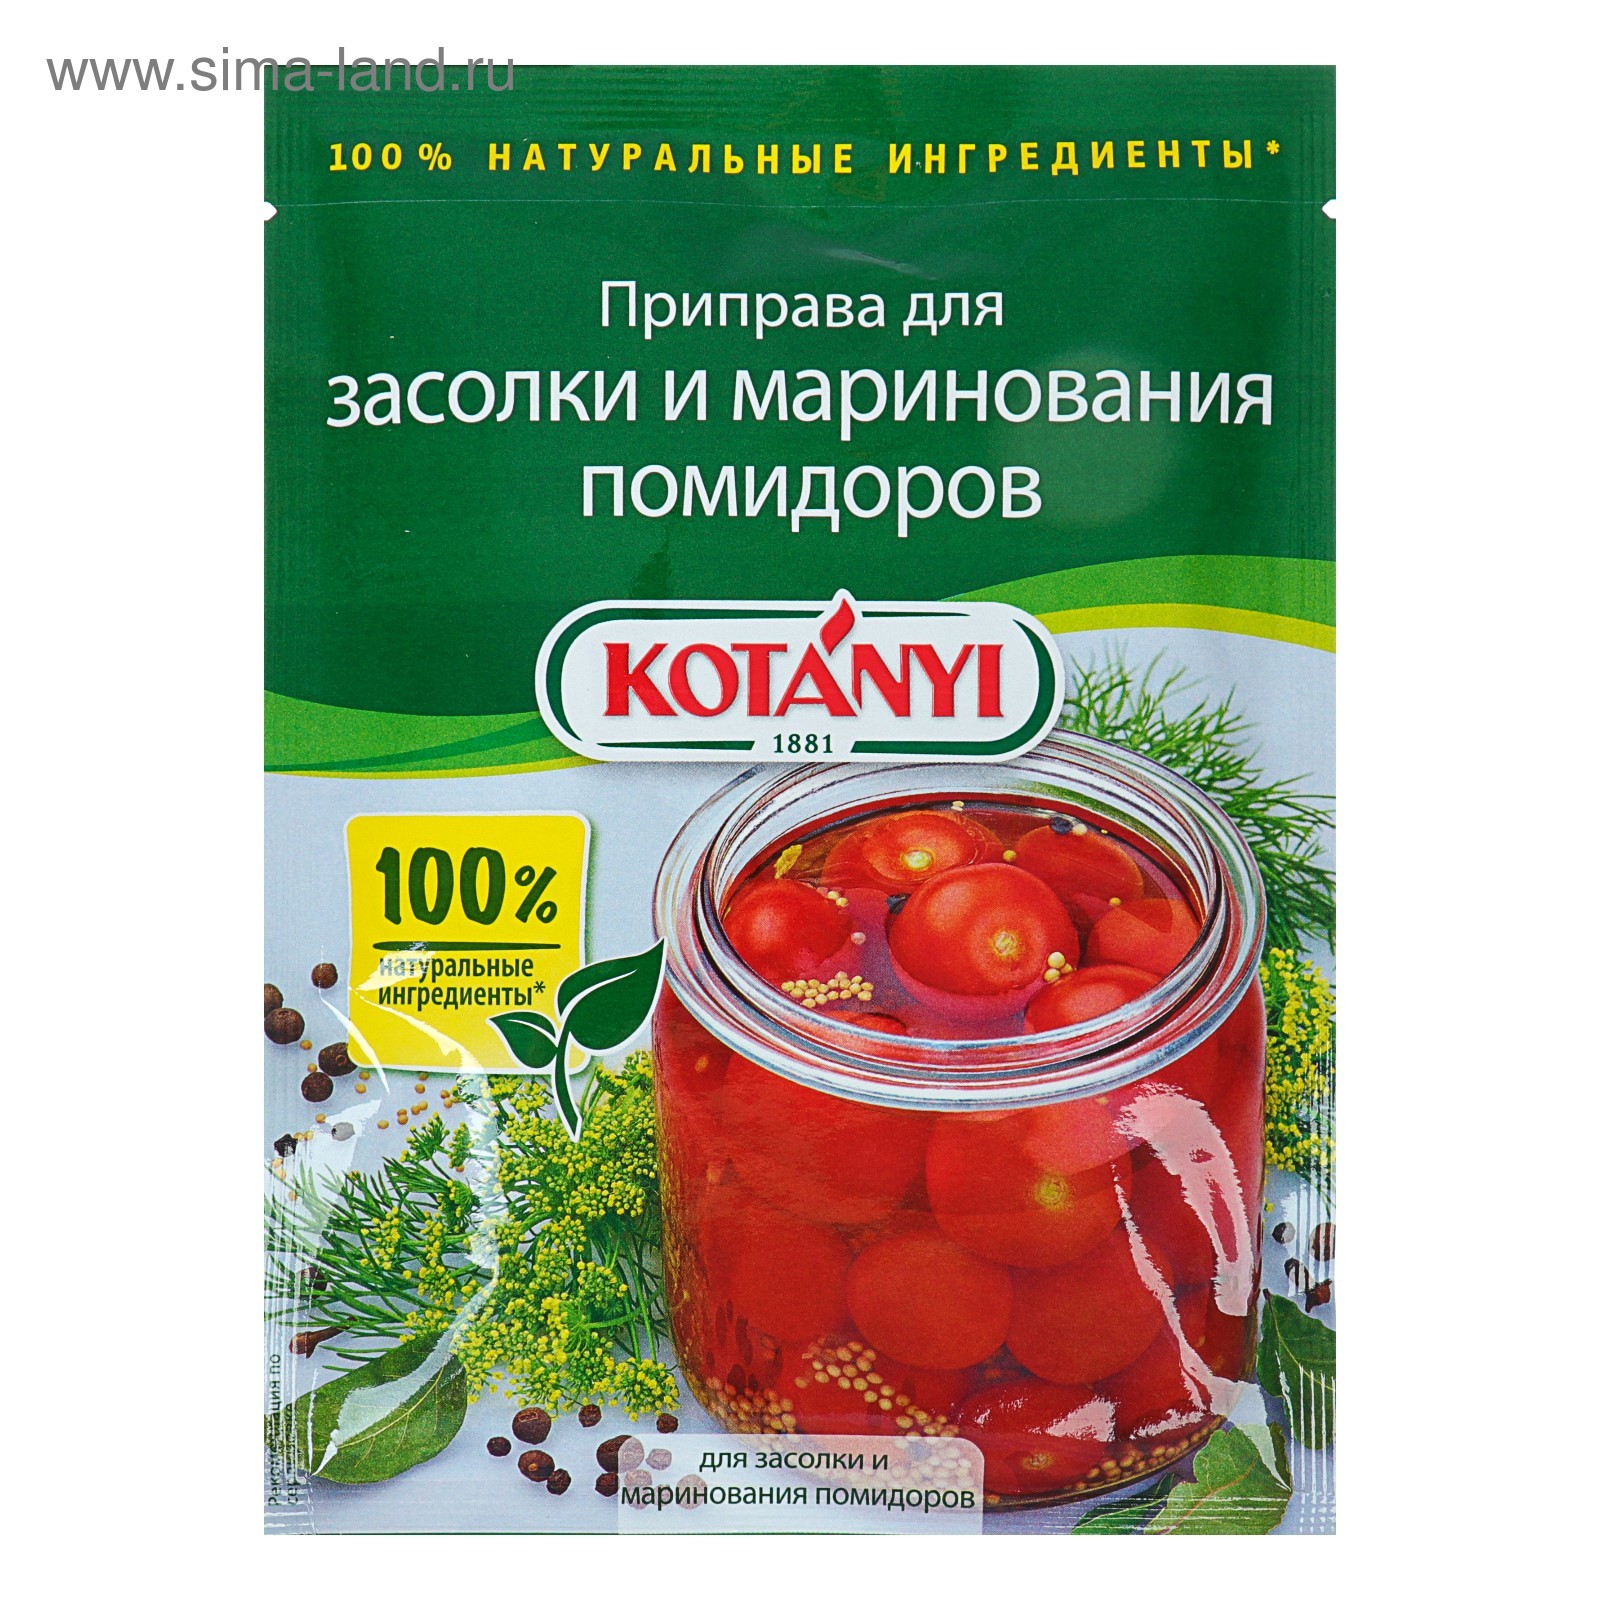 Kotanyi приправа для засолки и маринования помидоров, 25 г